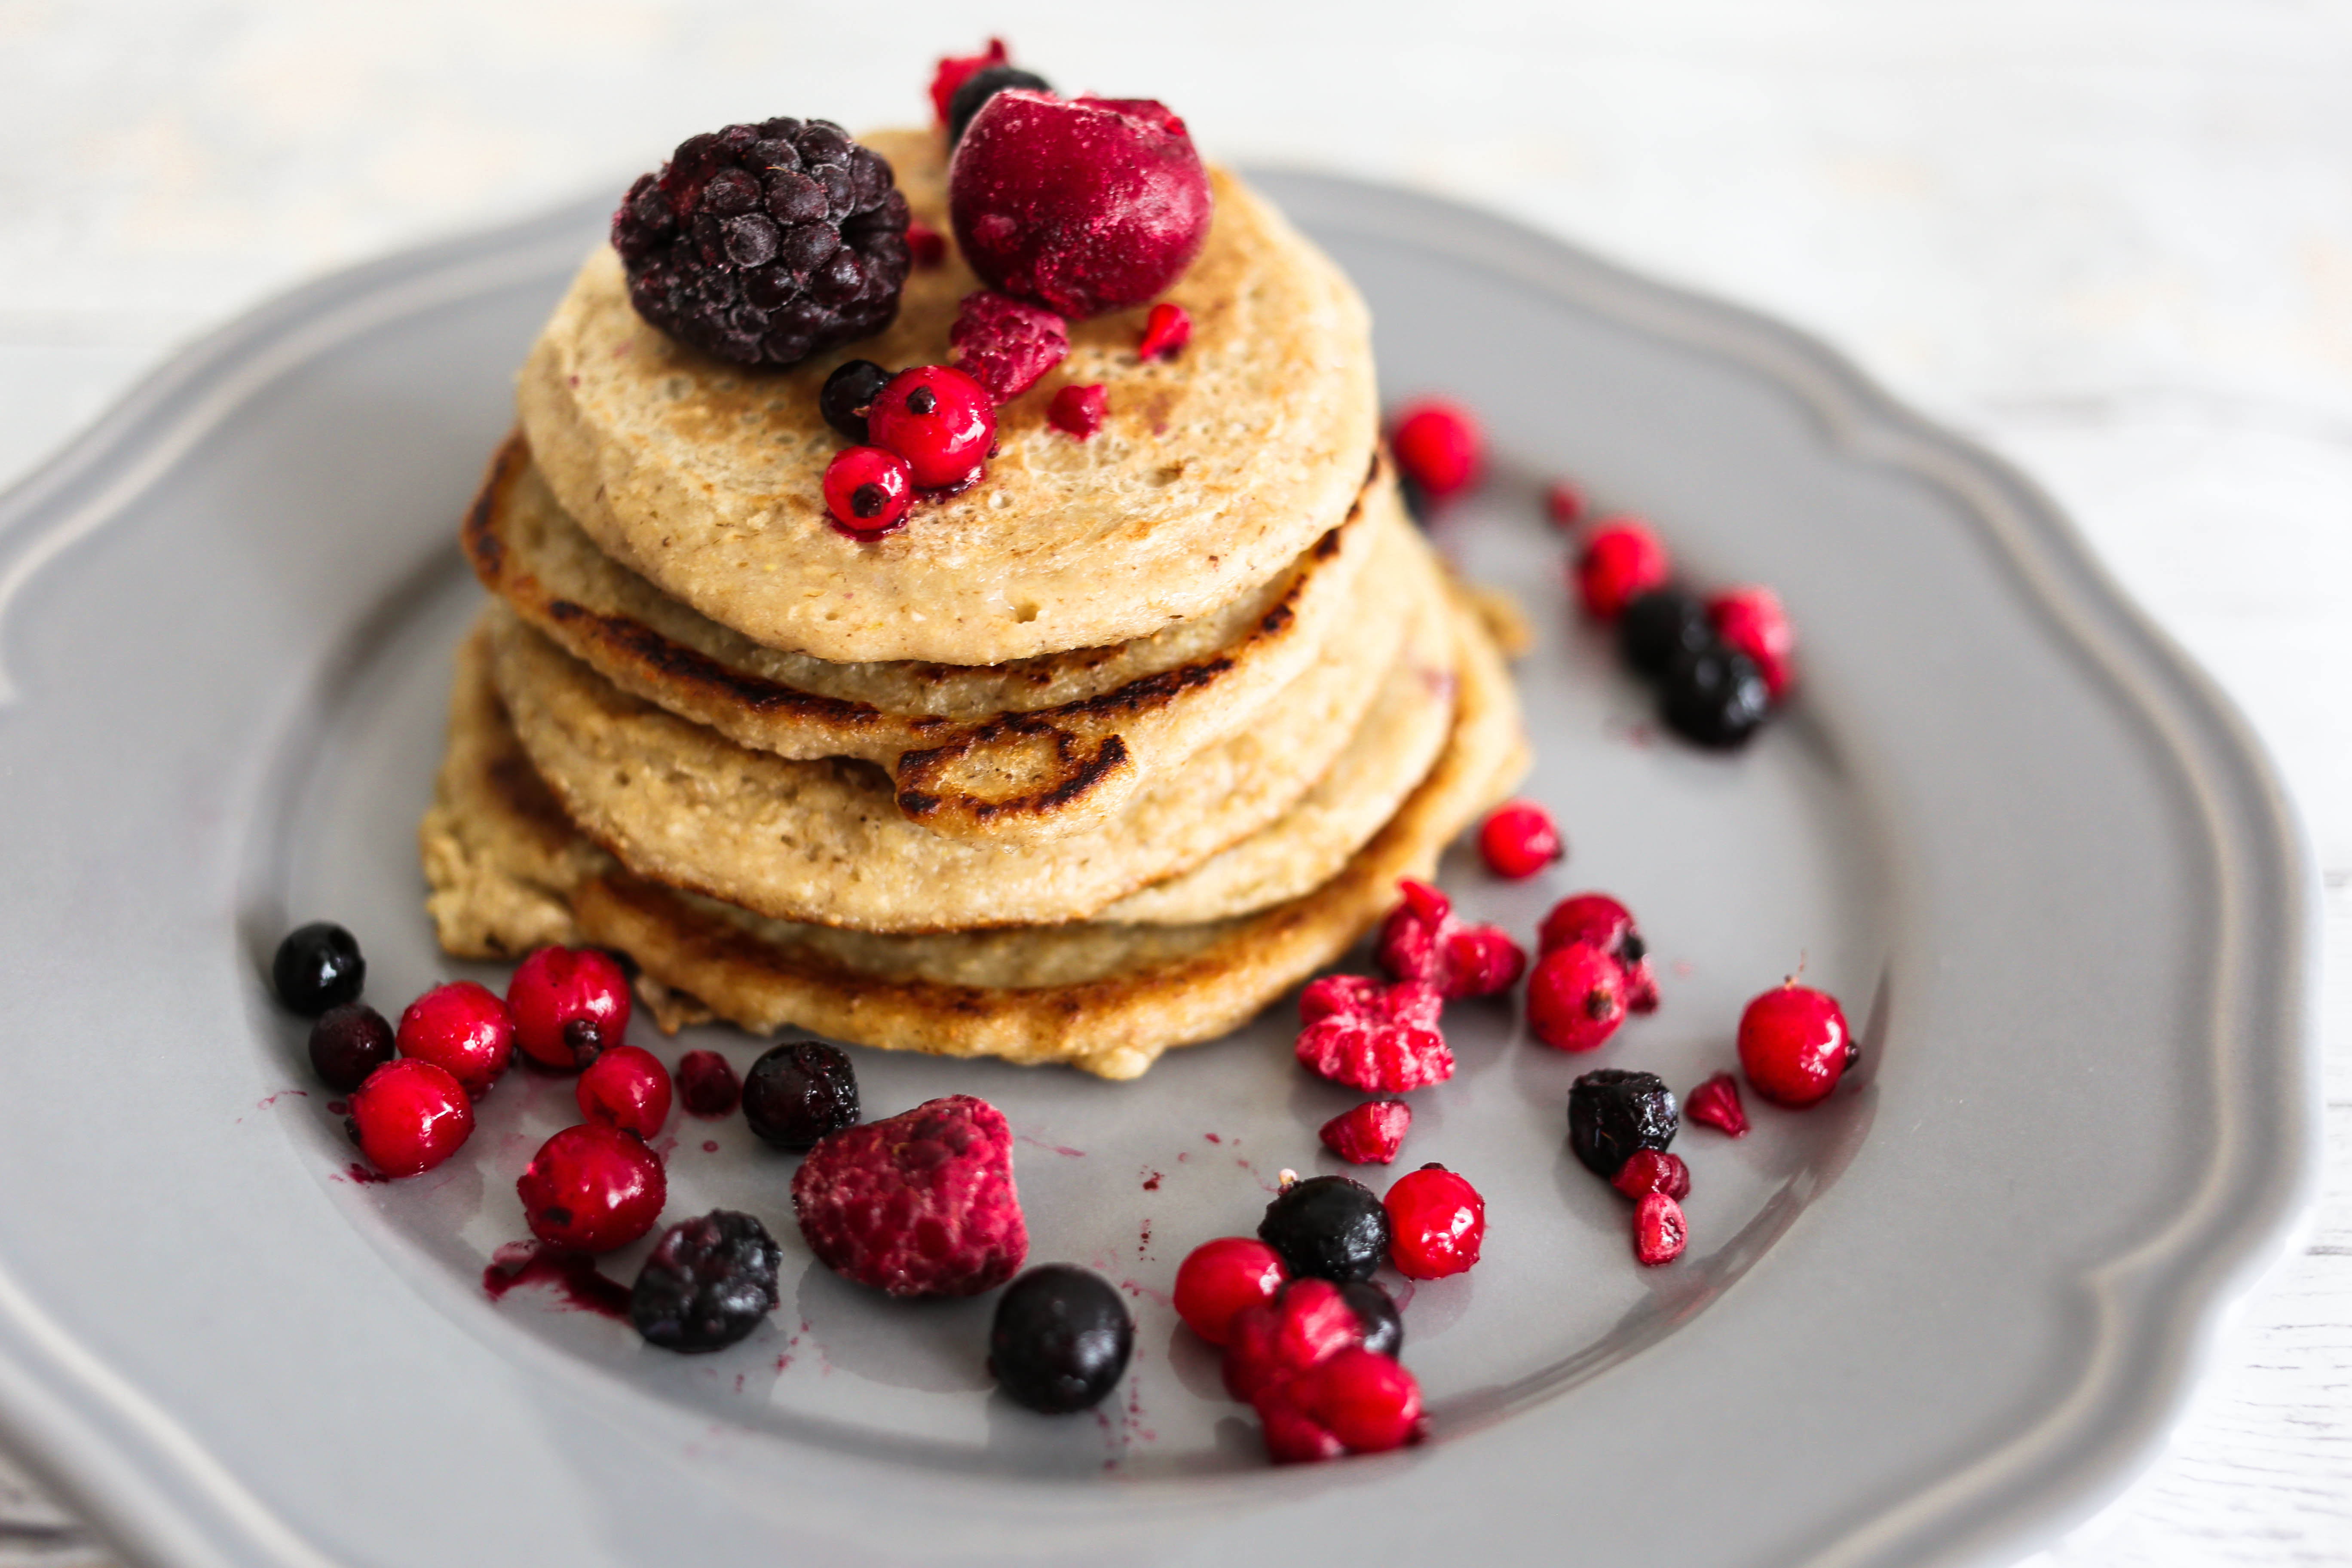 Frühstücksidee: Gesunde 3 Zutaten Pancakes - schnell und lecker